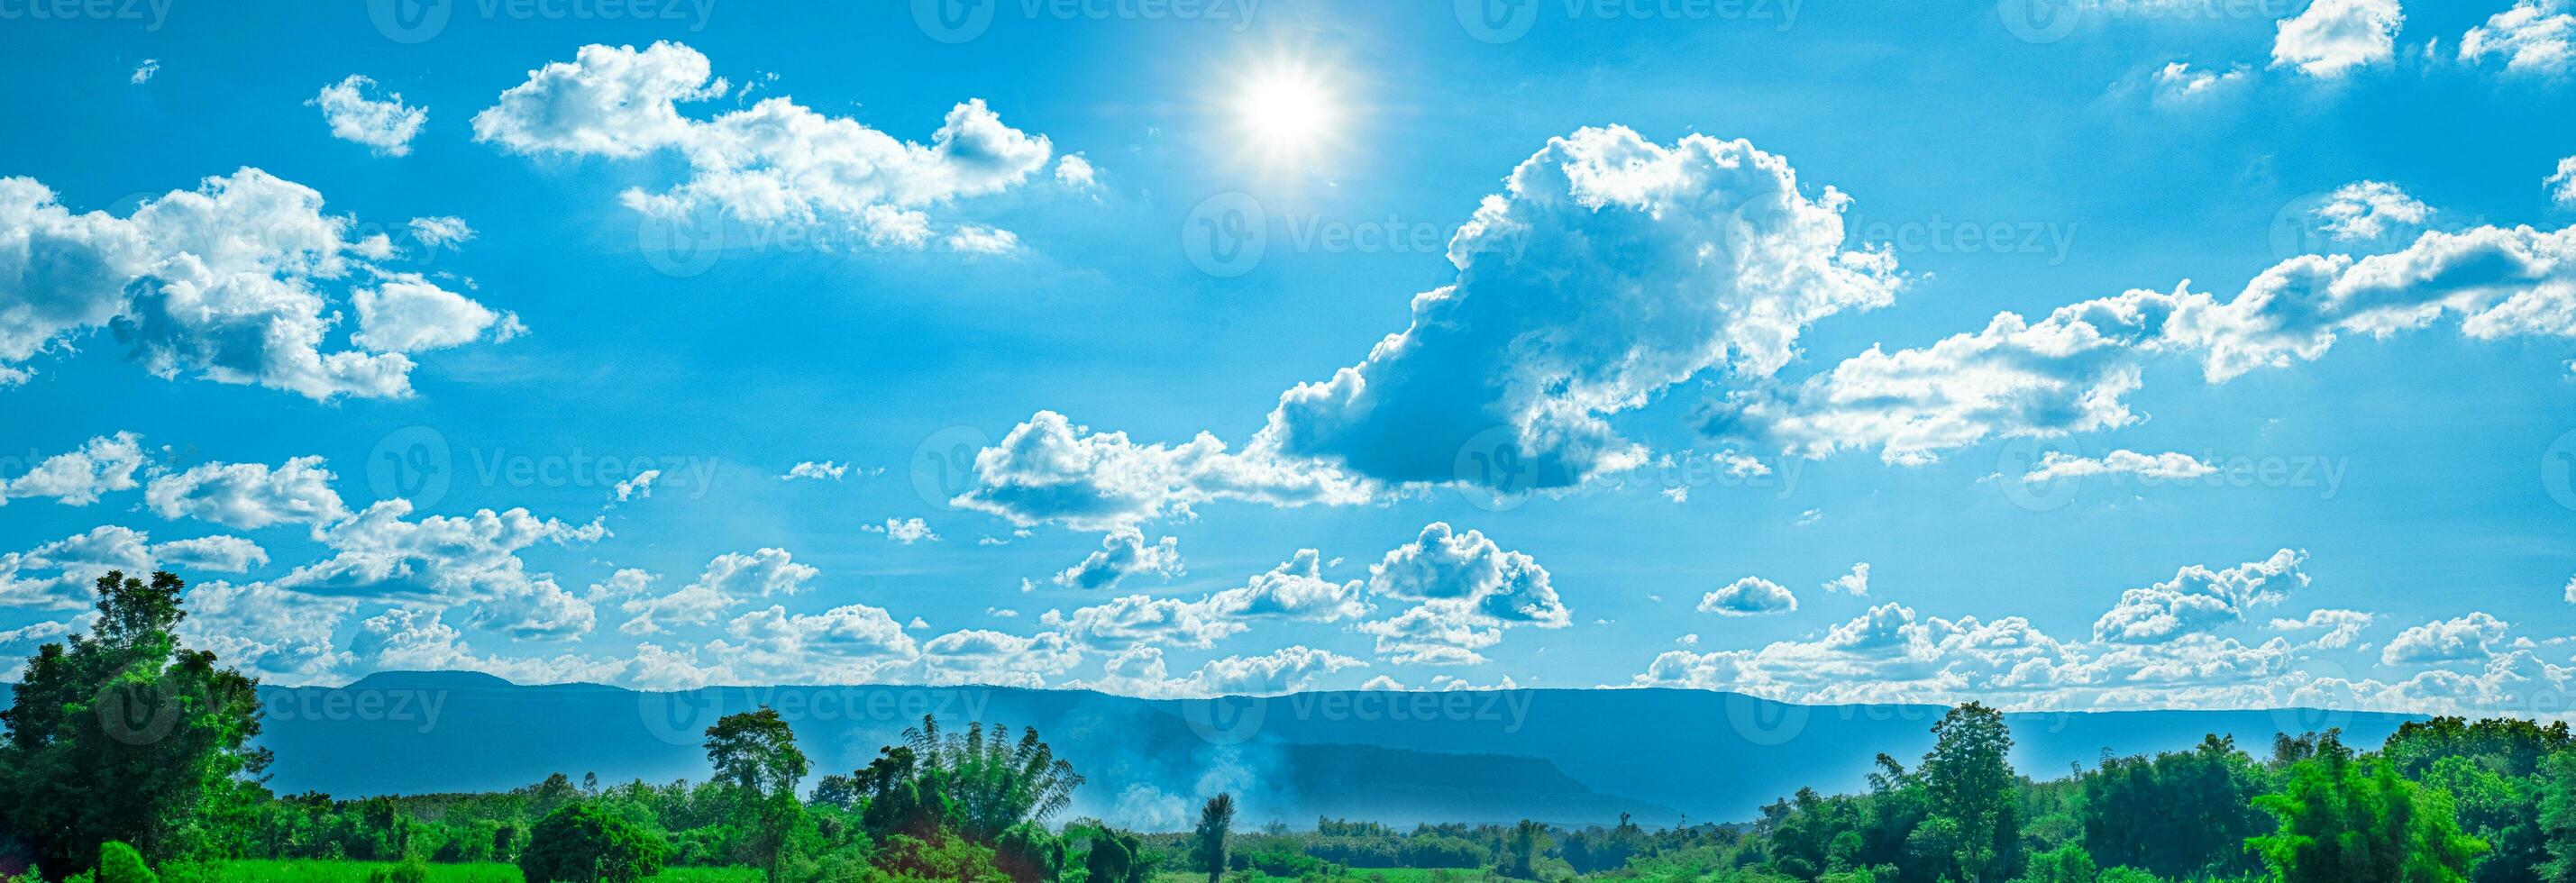 hermoso cielo azul con nubes blancas y luz solar foto